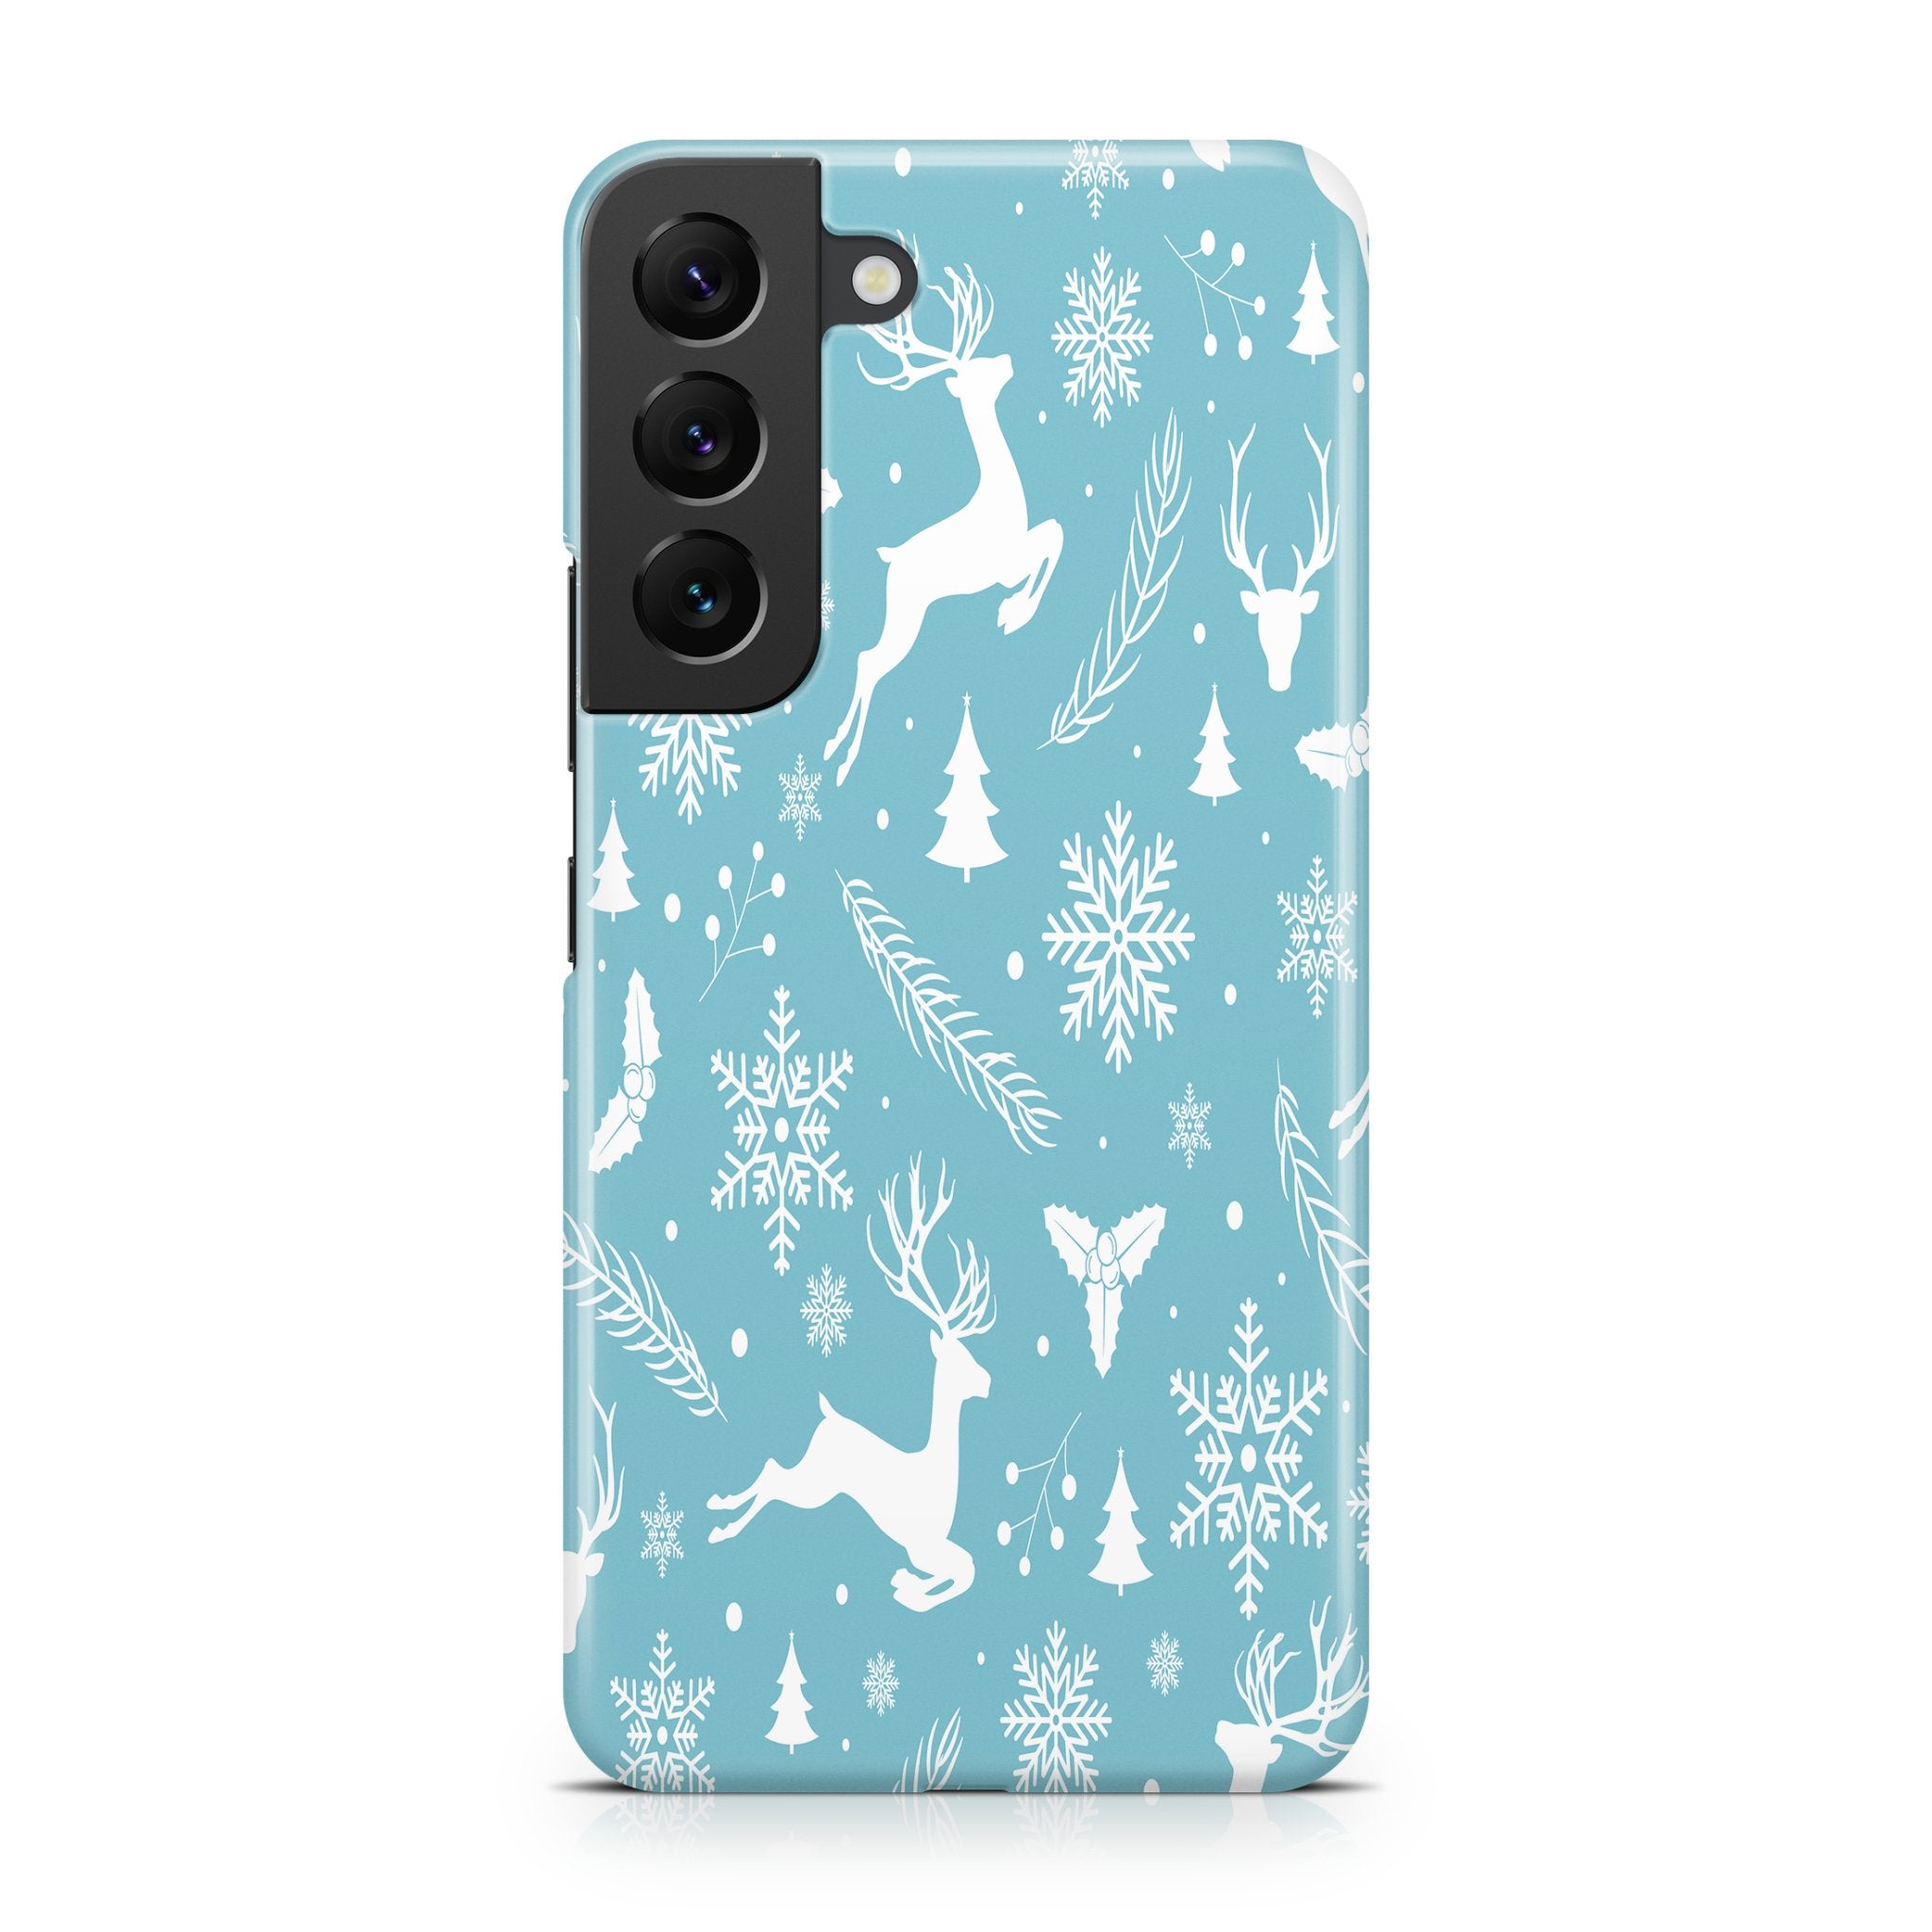 Winter Wonderland - Samsung phone case designs by CaseSwagger